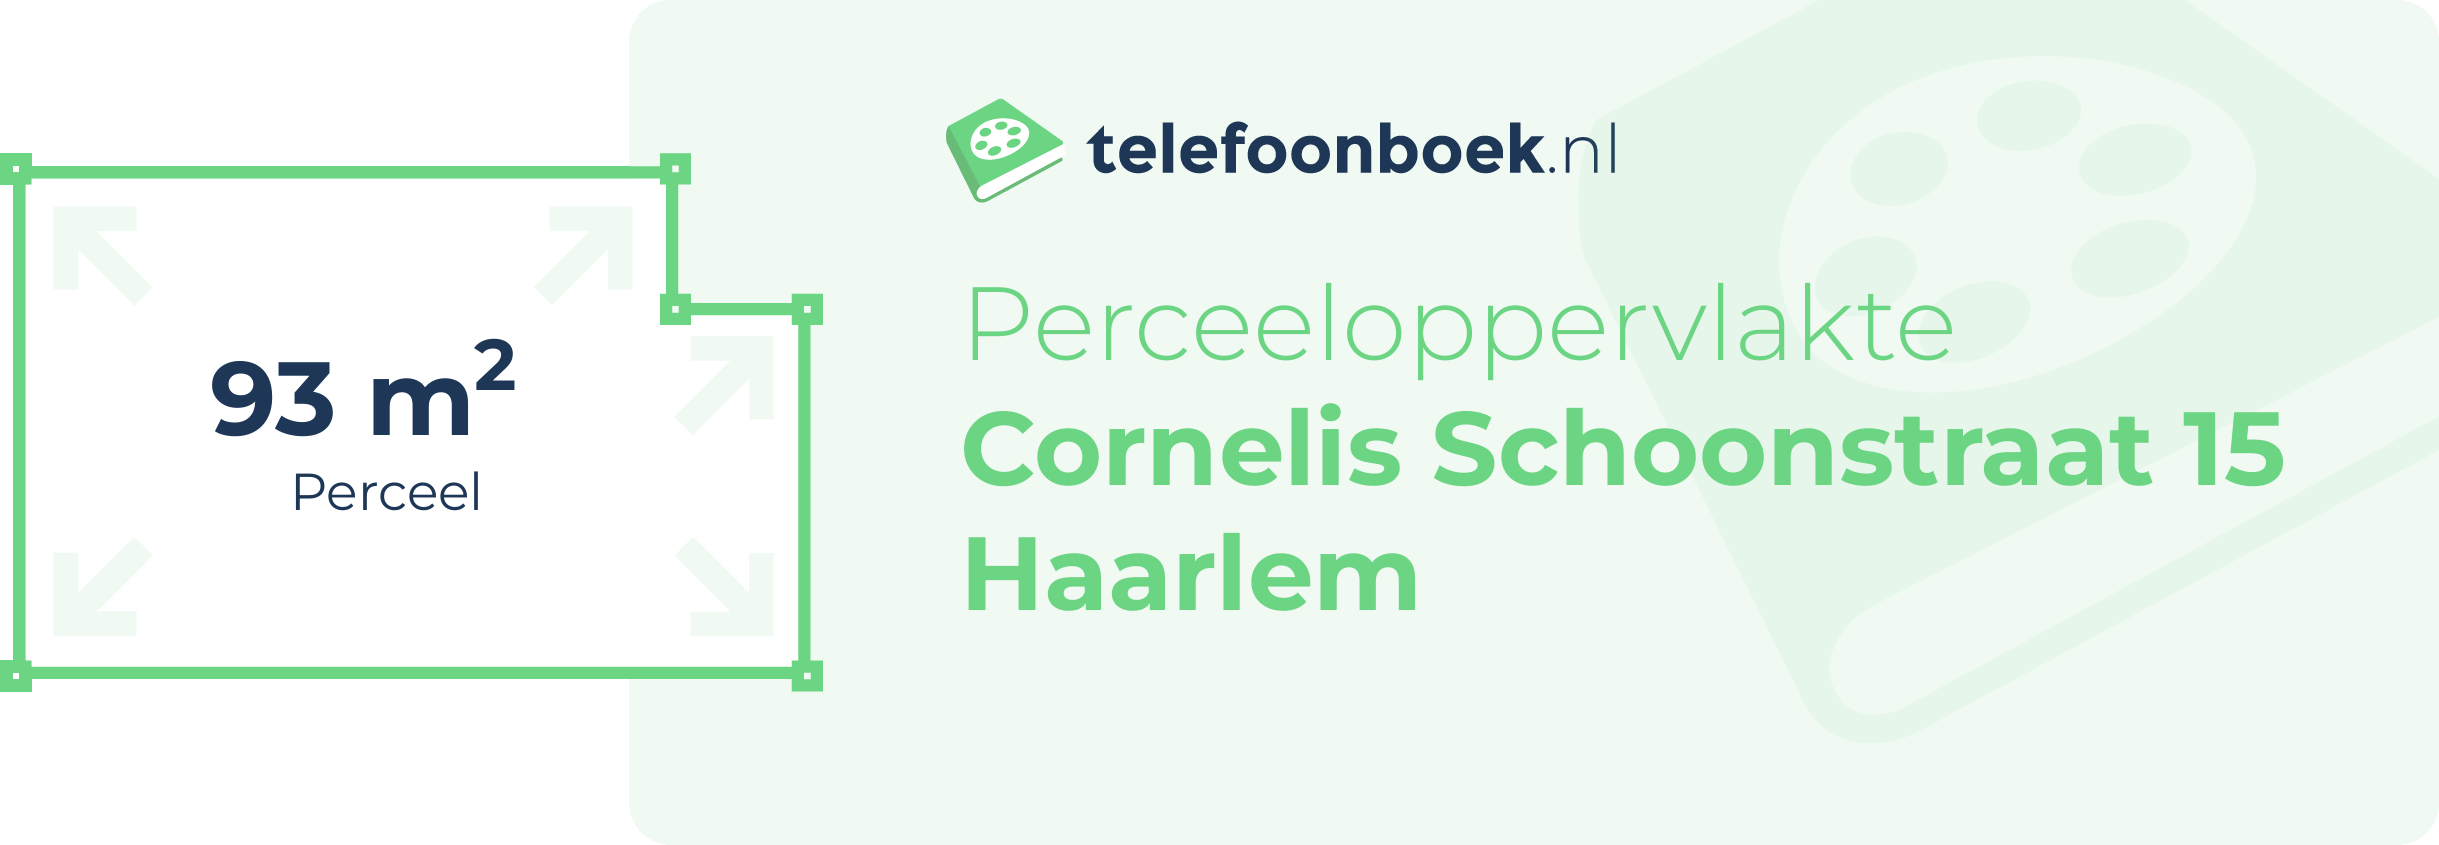 Perceeloppervlakte Cornelis Schoonstraat 15 Haarlem